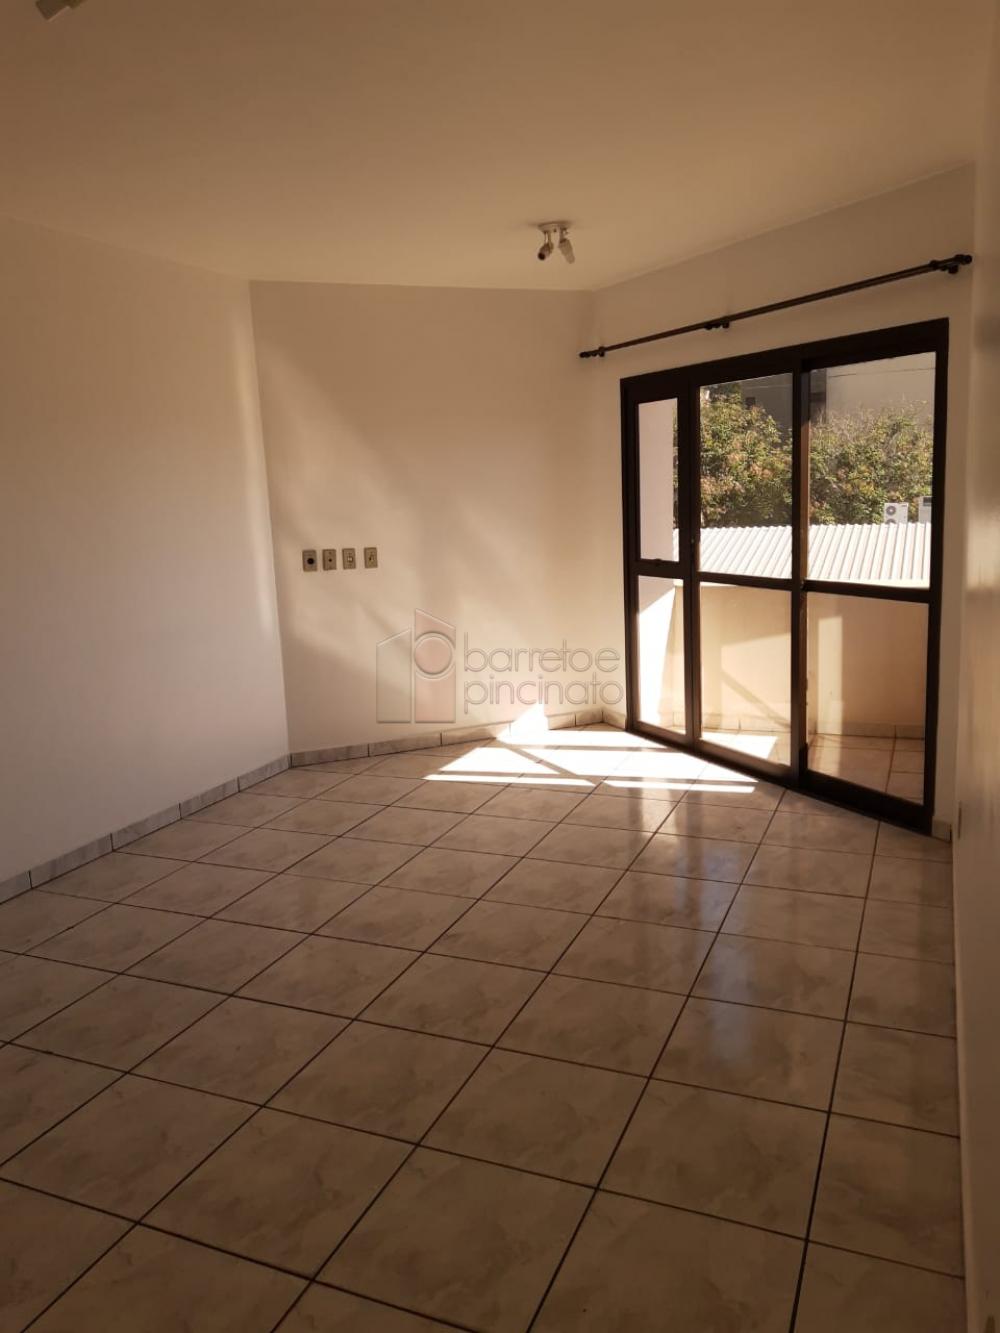 Alugar Apartamento / Padrão em Jundiaí R$ 1.700,00 - Foto 1